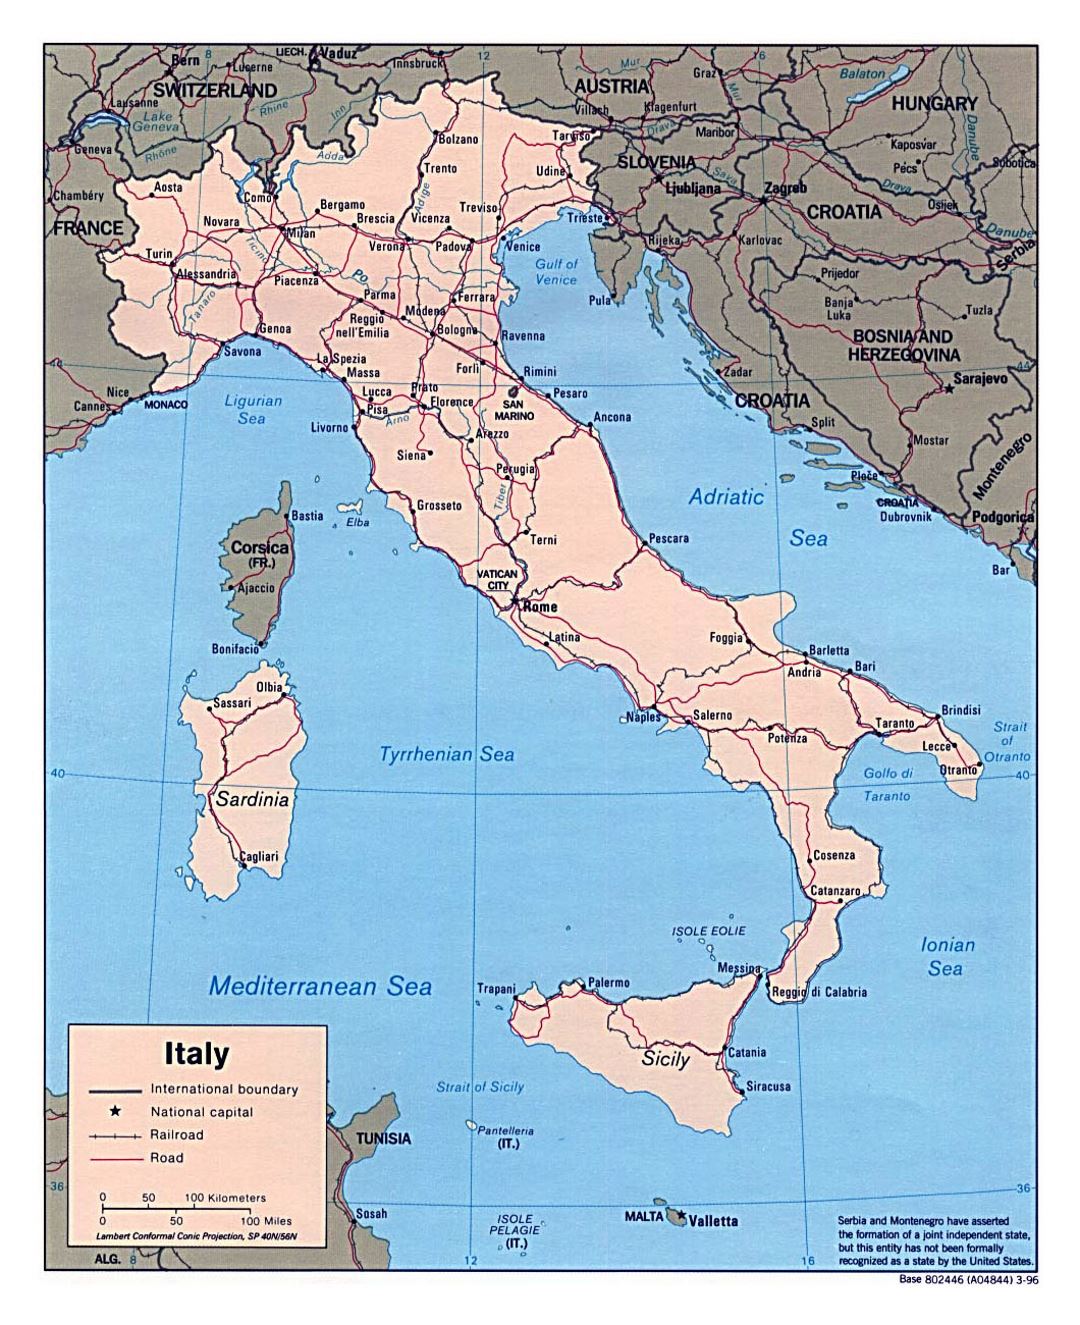 Grande mapa político de Italia, con carreteras, ferrocarriles y las principales ciudades - 1996